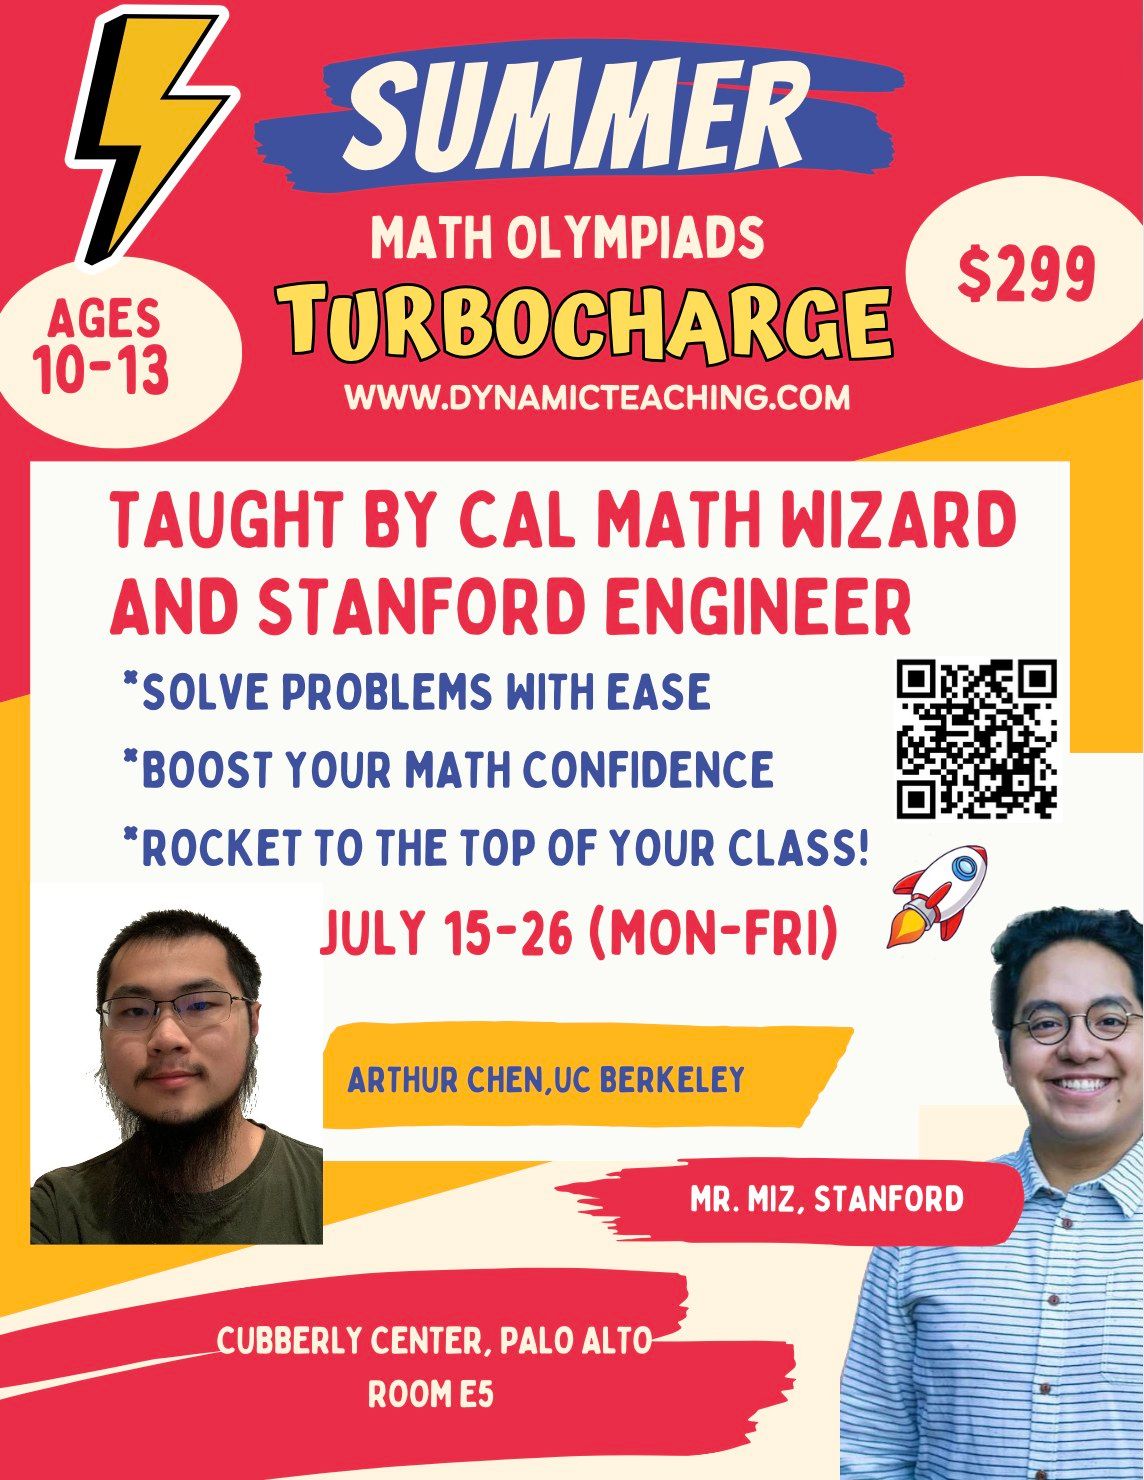 Summer Math Olympiads Turbocharge